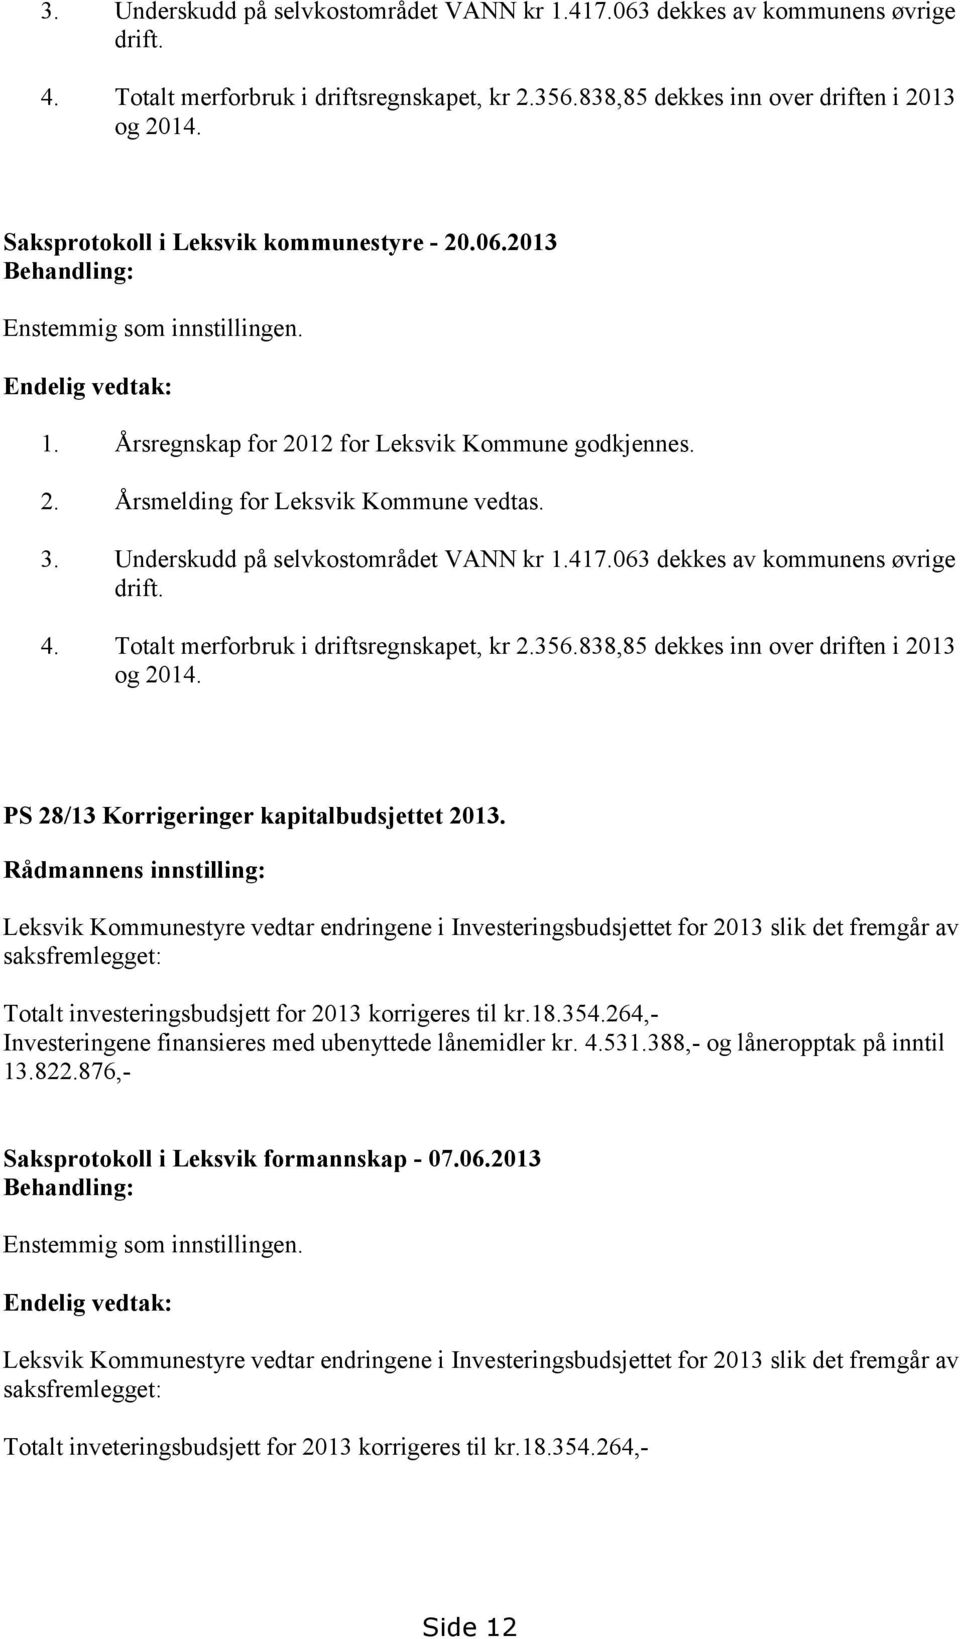 PS 28/13 Korrigeringer kapitalbudsjettet 2013.